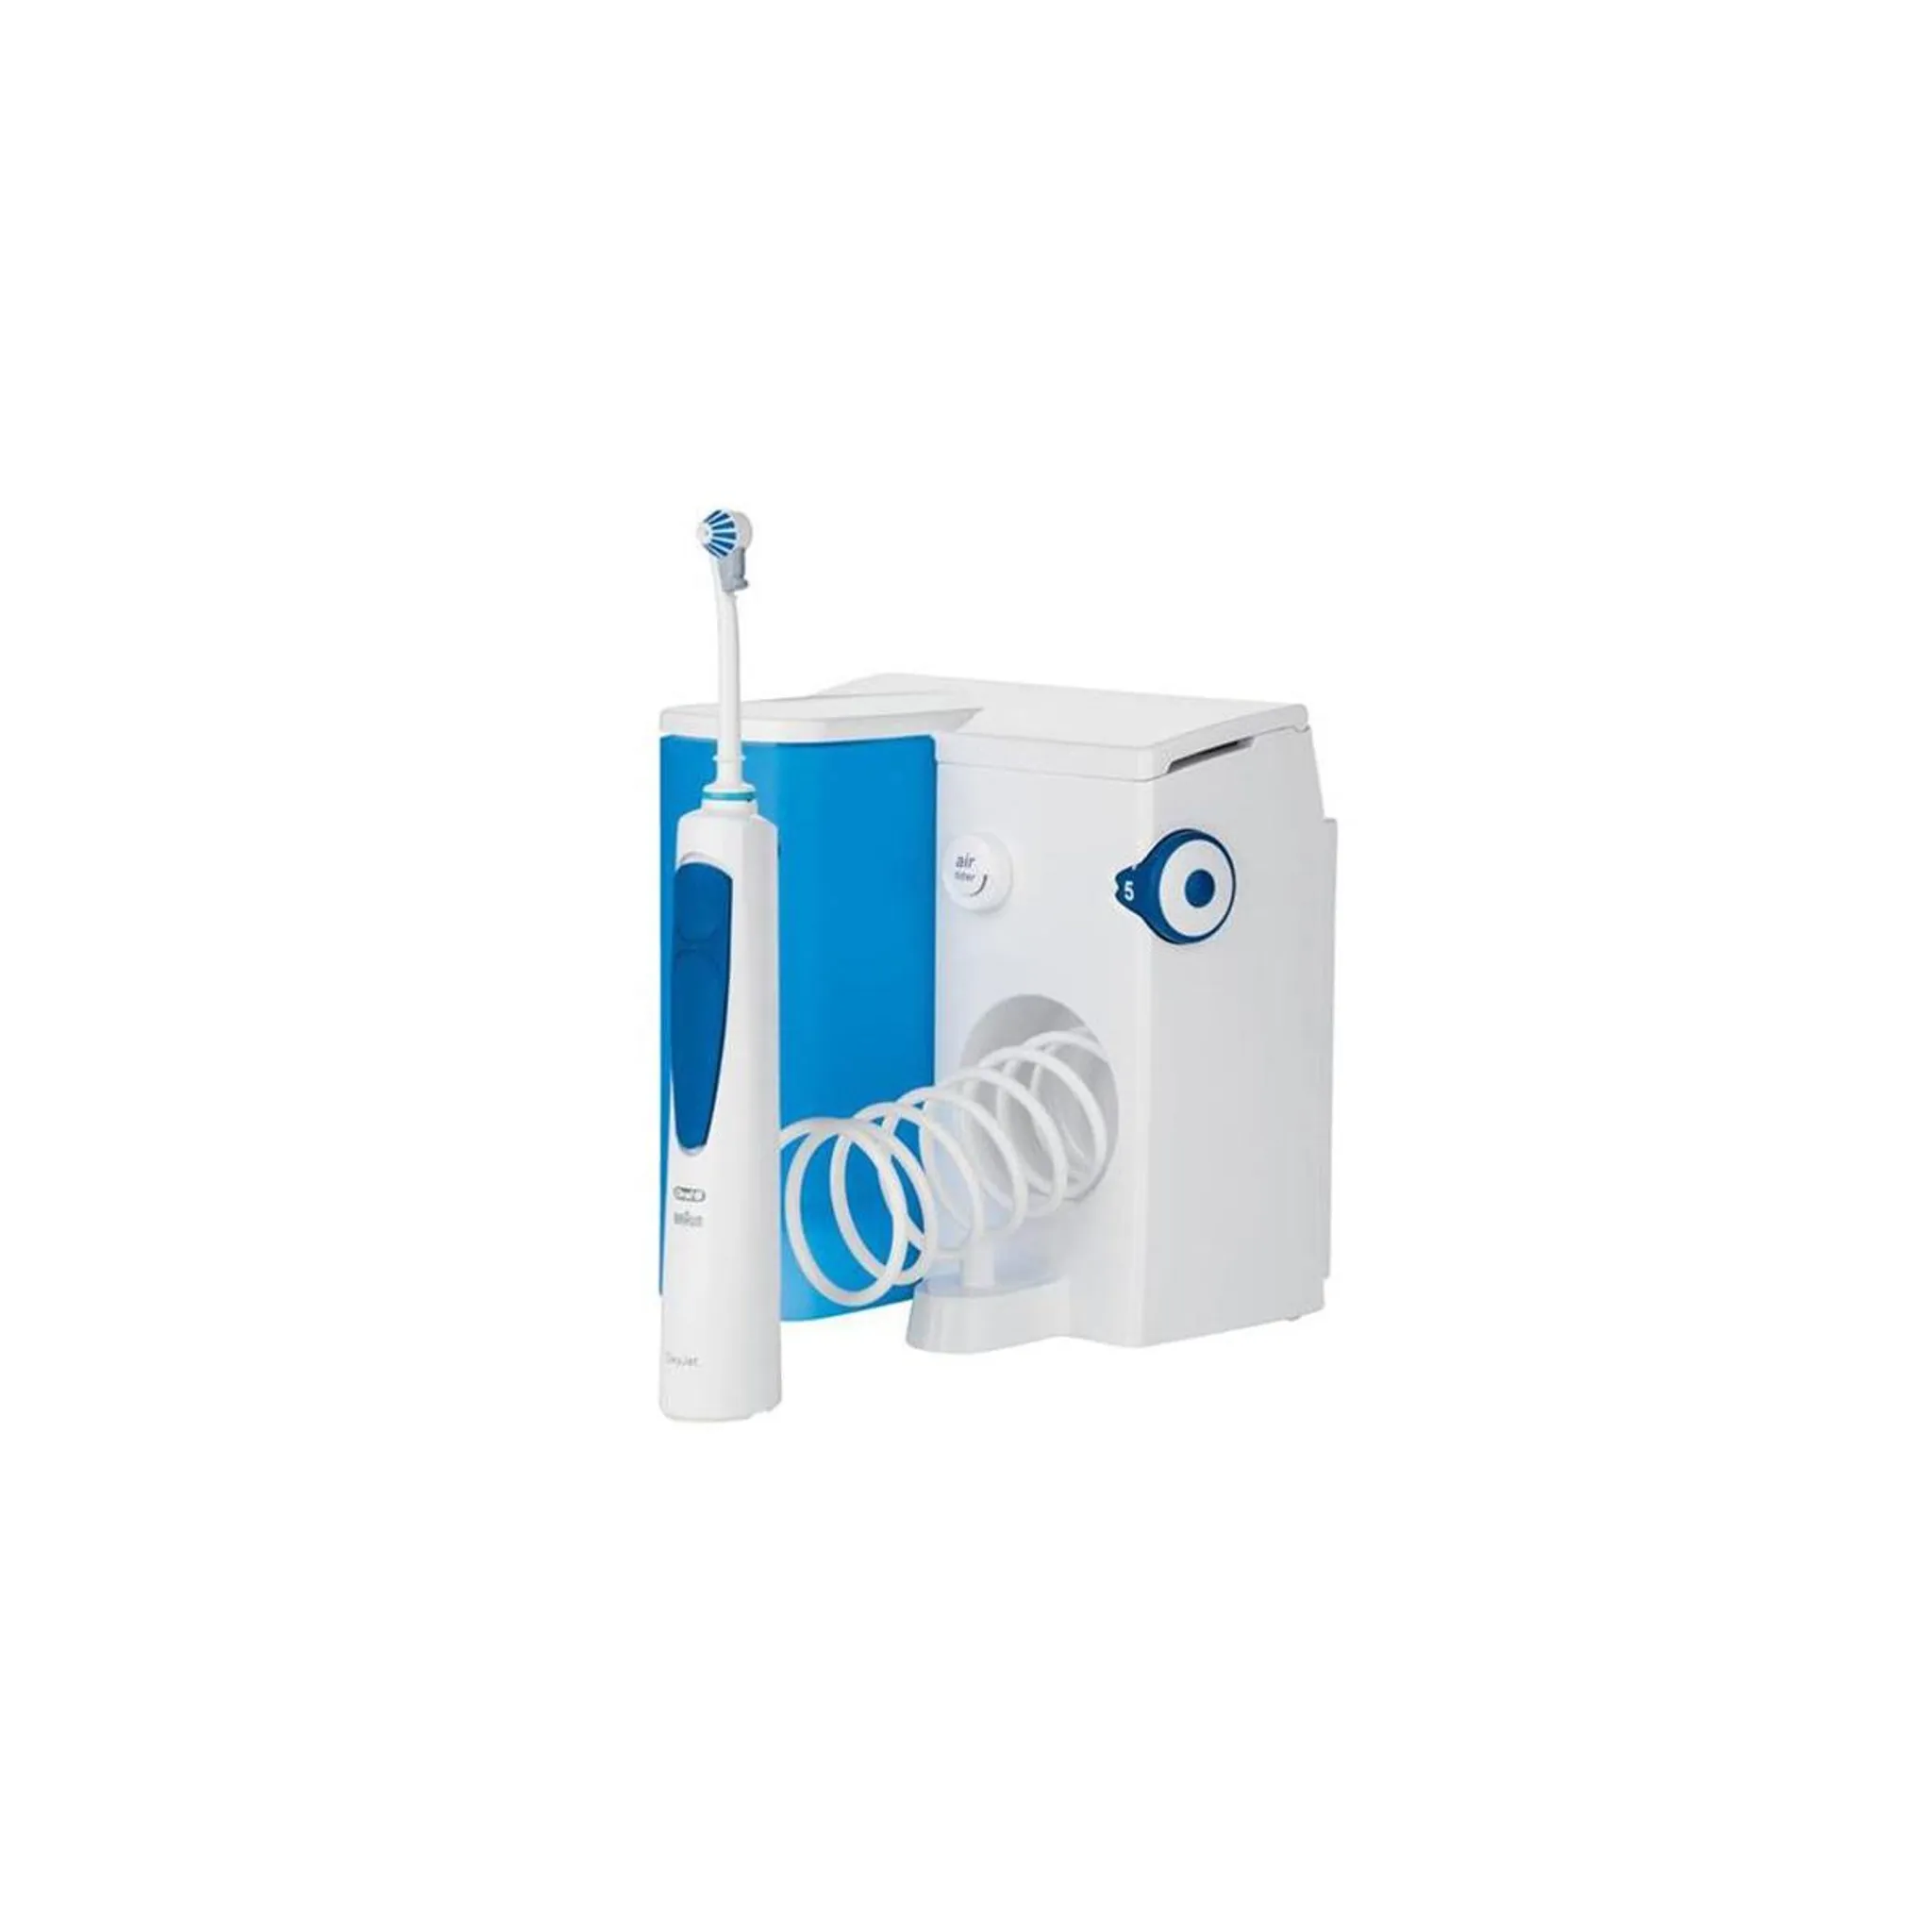 Oral-B Reinigungssystem OxyJet Munddusche mit